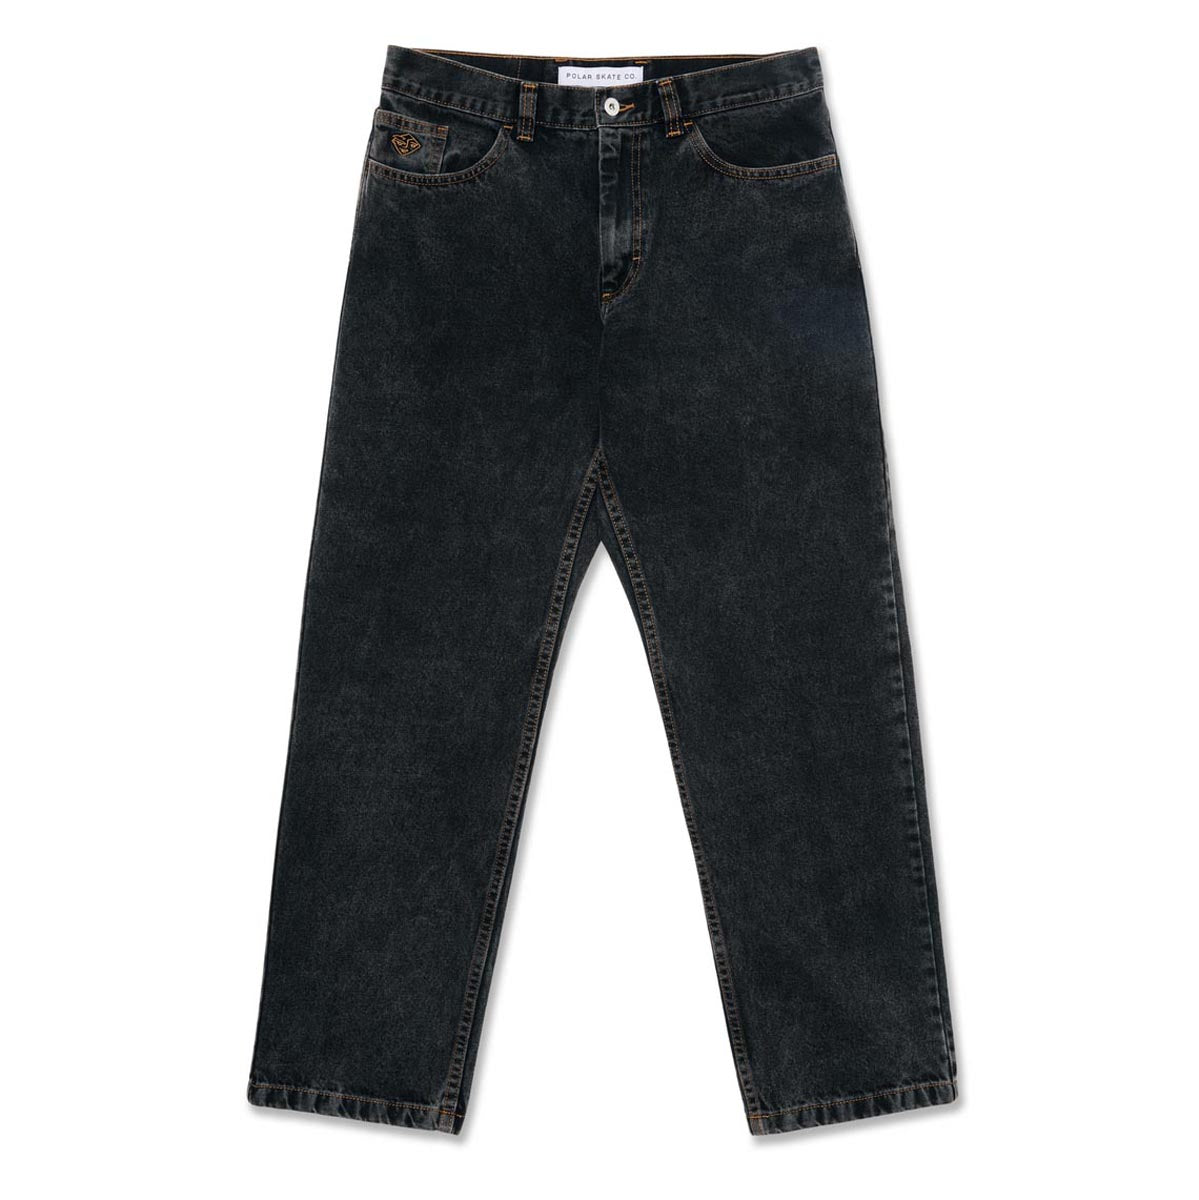 Polar 89! Denim Jeans - Washed Black image 1